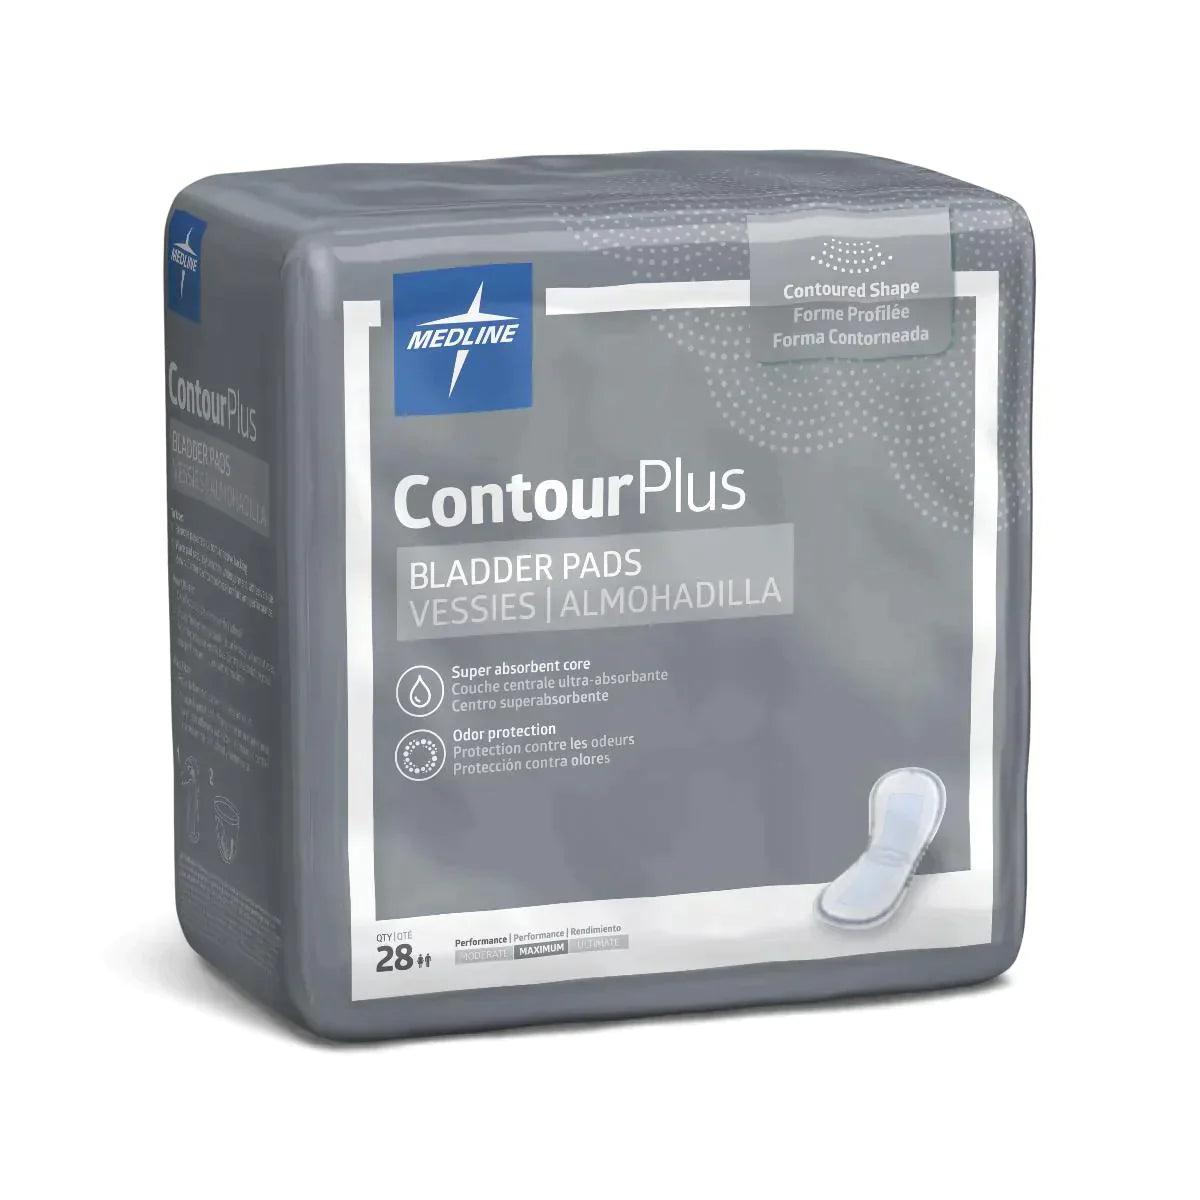 ContourPlus Bladder Control Pads (6.5"x13.5") : Maximum